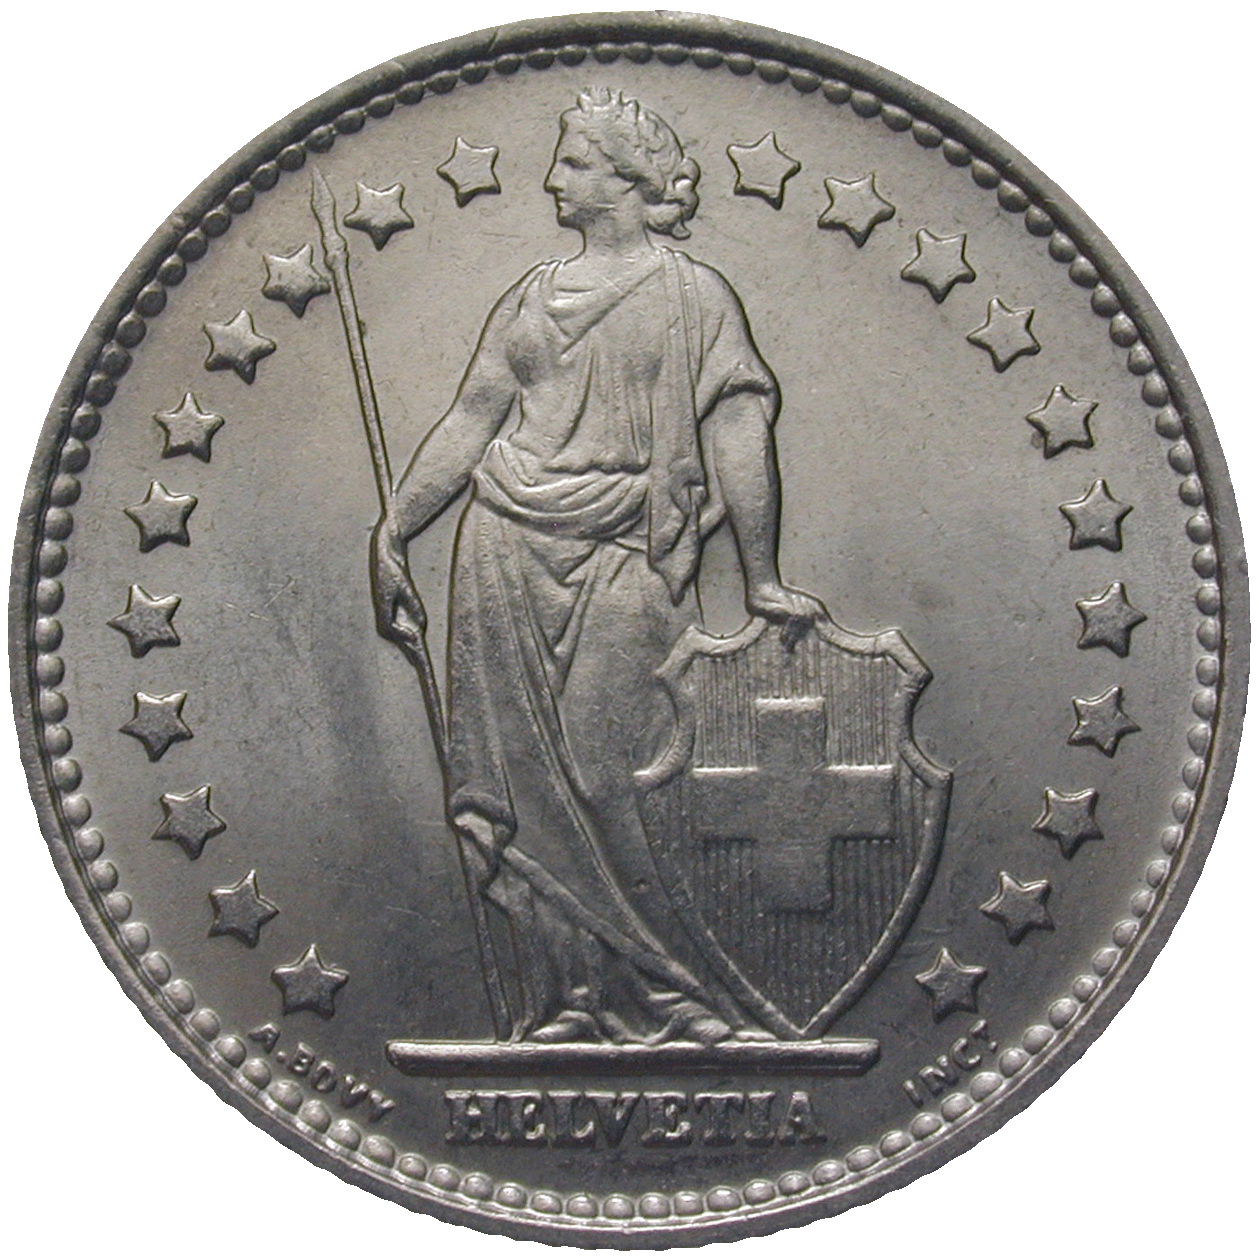 Schweizerische Eidgenossenschaft, 1 Franken 1968 (obverse)